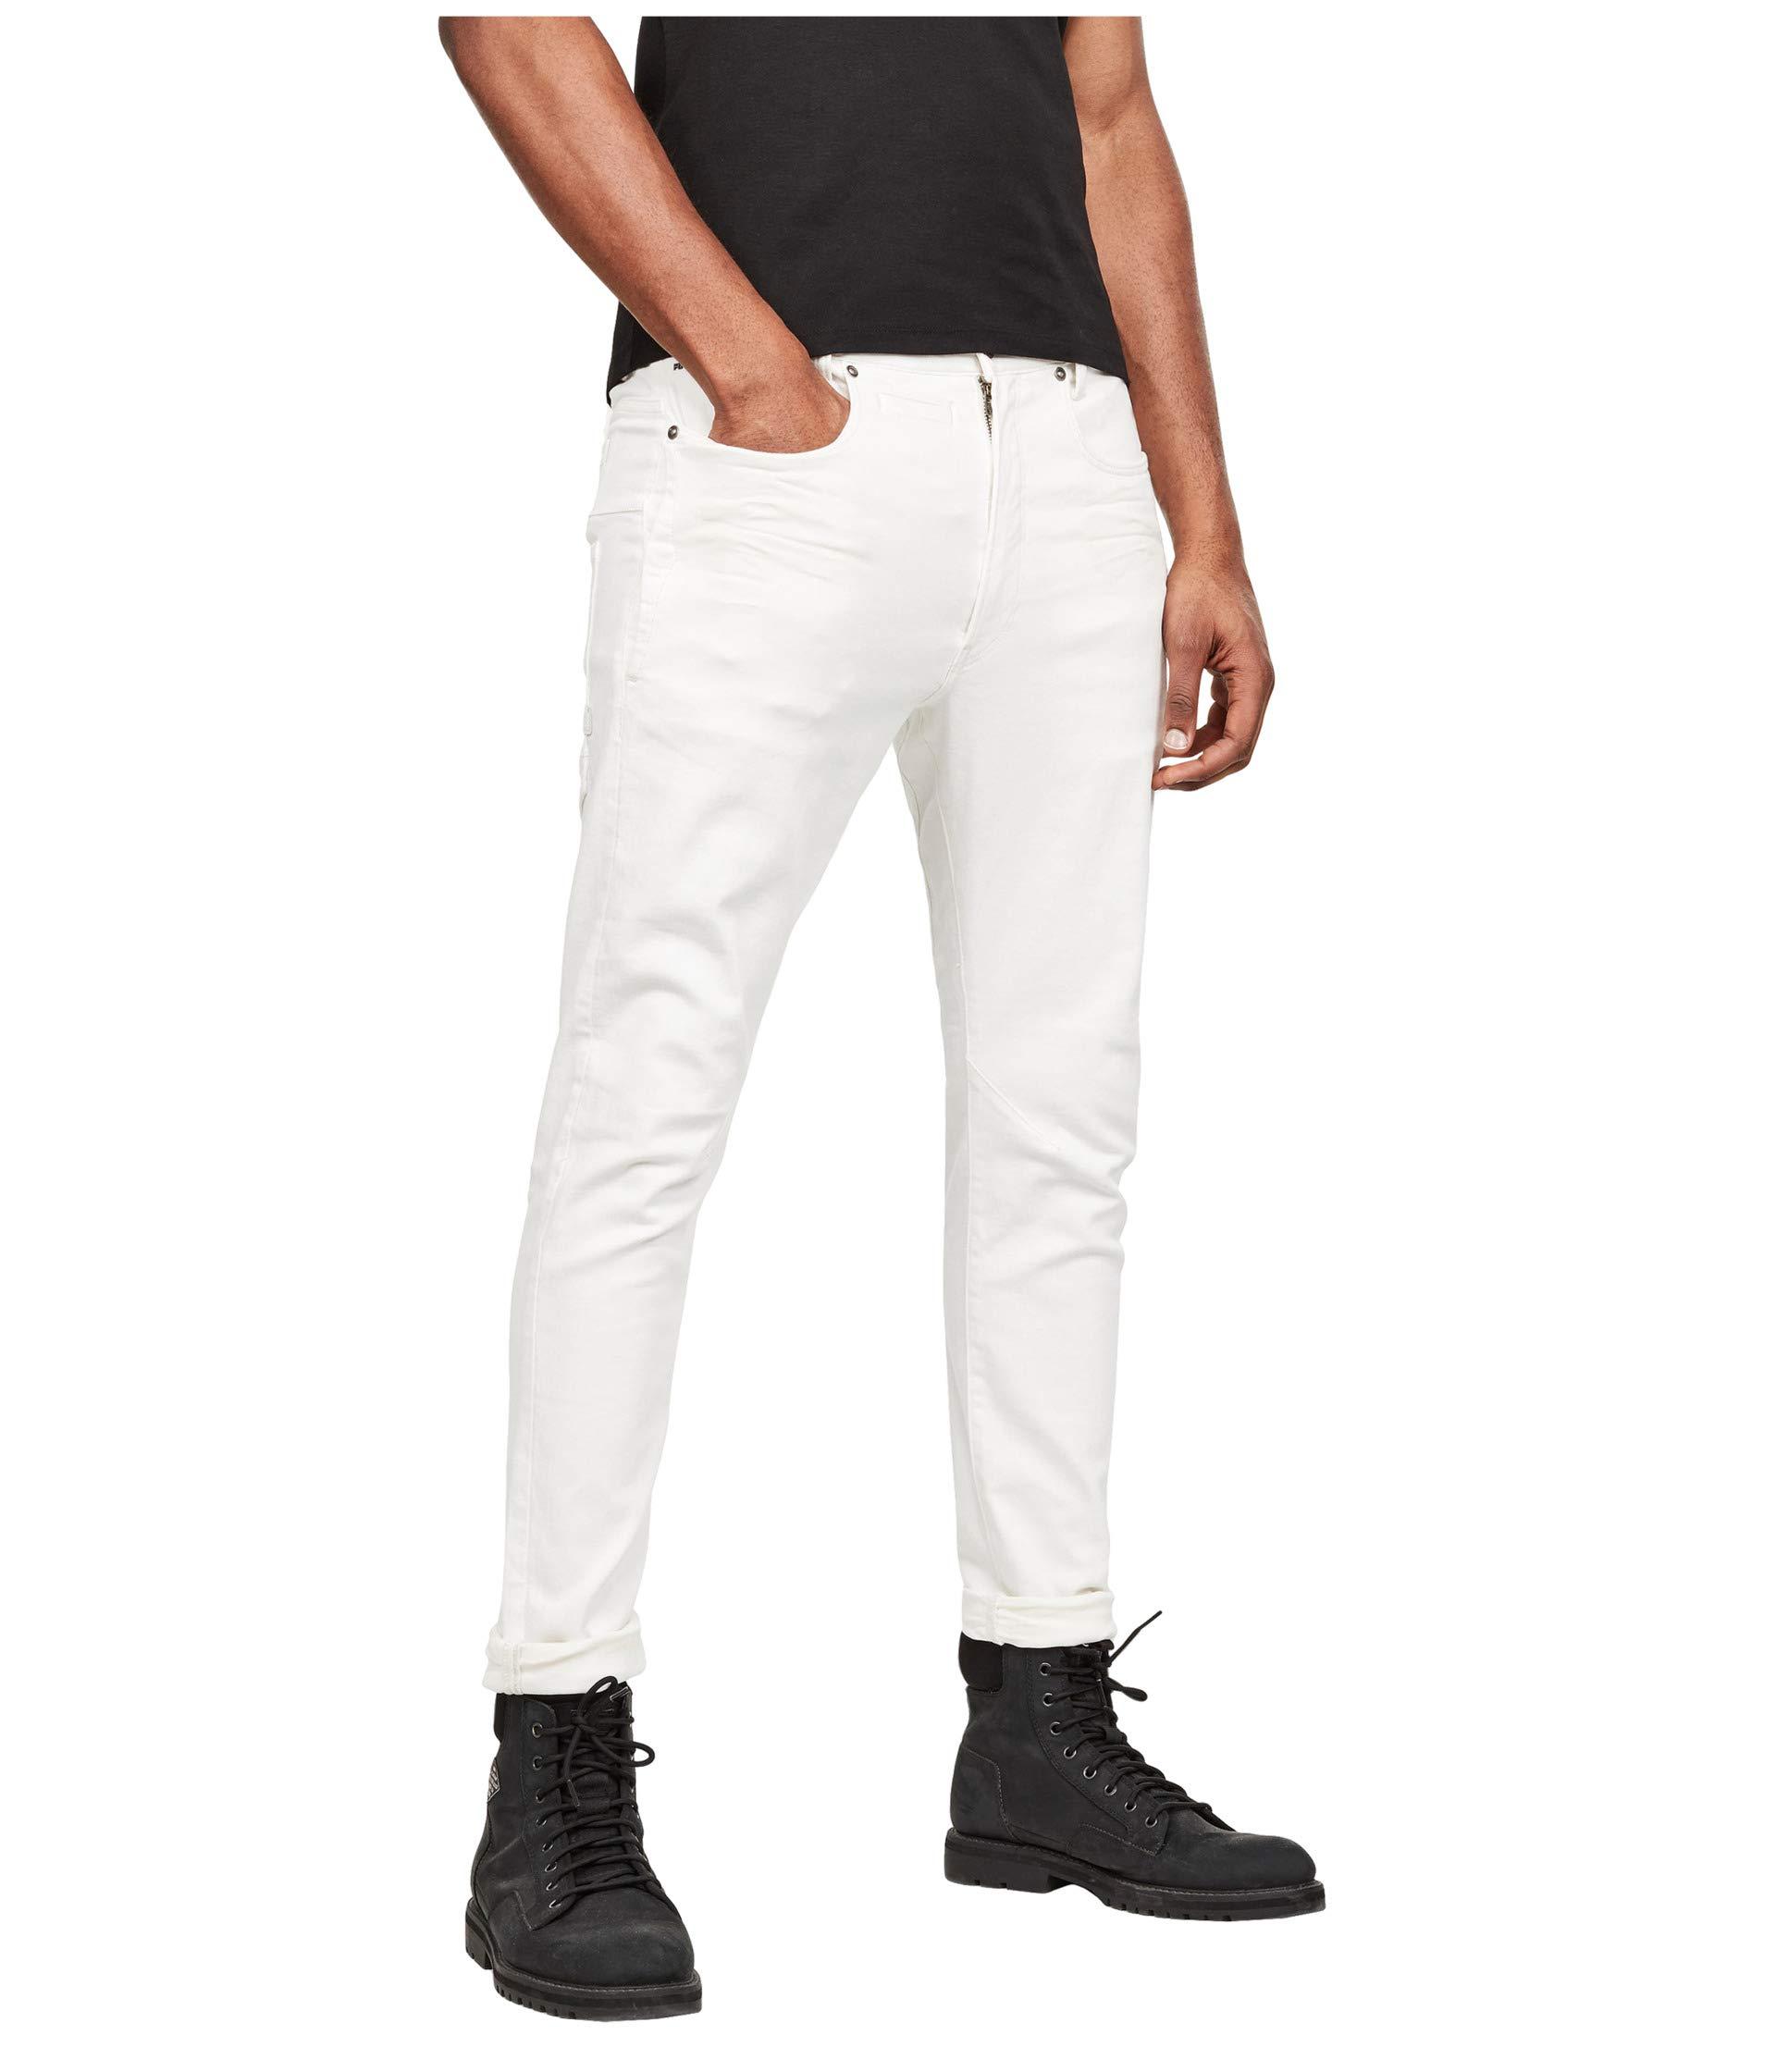 G-Star RAW Denim D-staq 3-d Slim Jeans In White for Men - Lyst